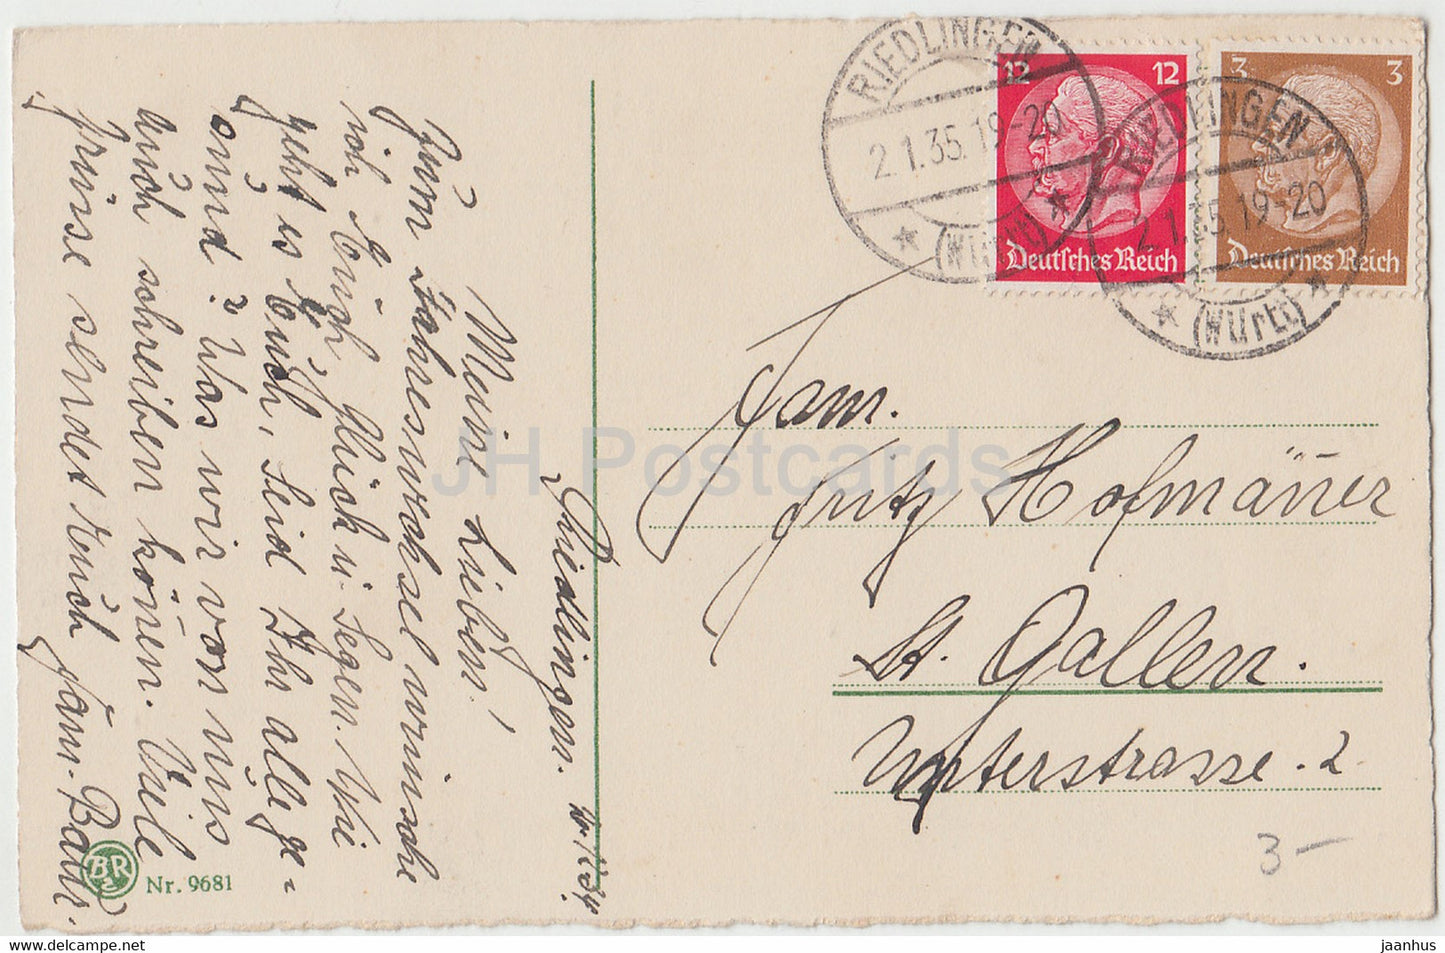 New Year Greeting Card - Die Besten Wunsche zum neuen Jahre - bell - BR 9681 - old postcard - 1919 - Germany - used